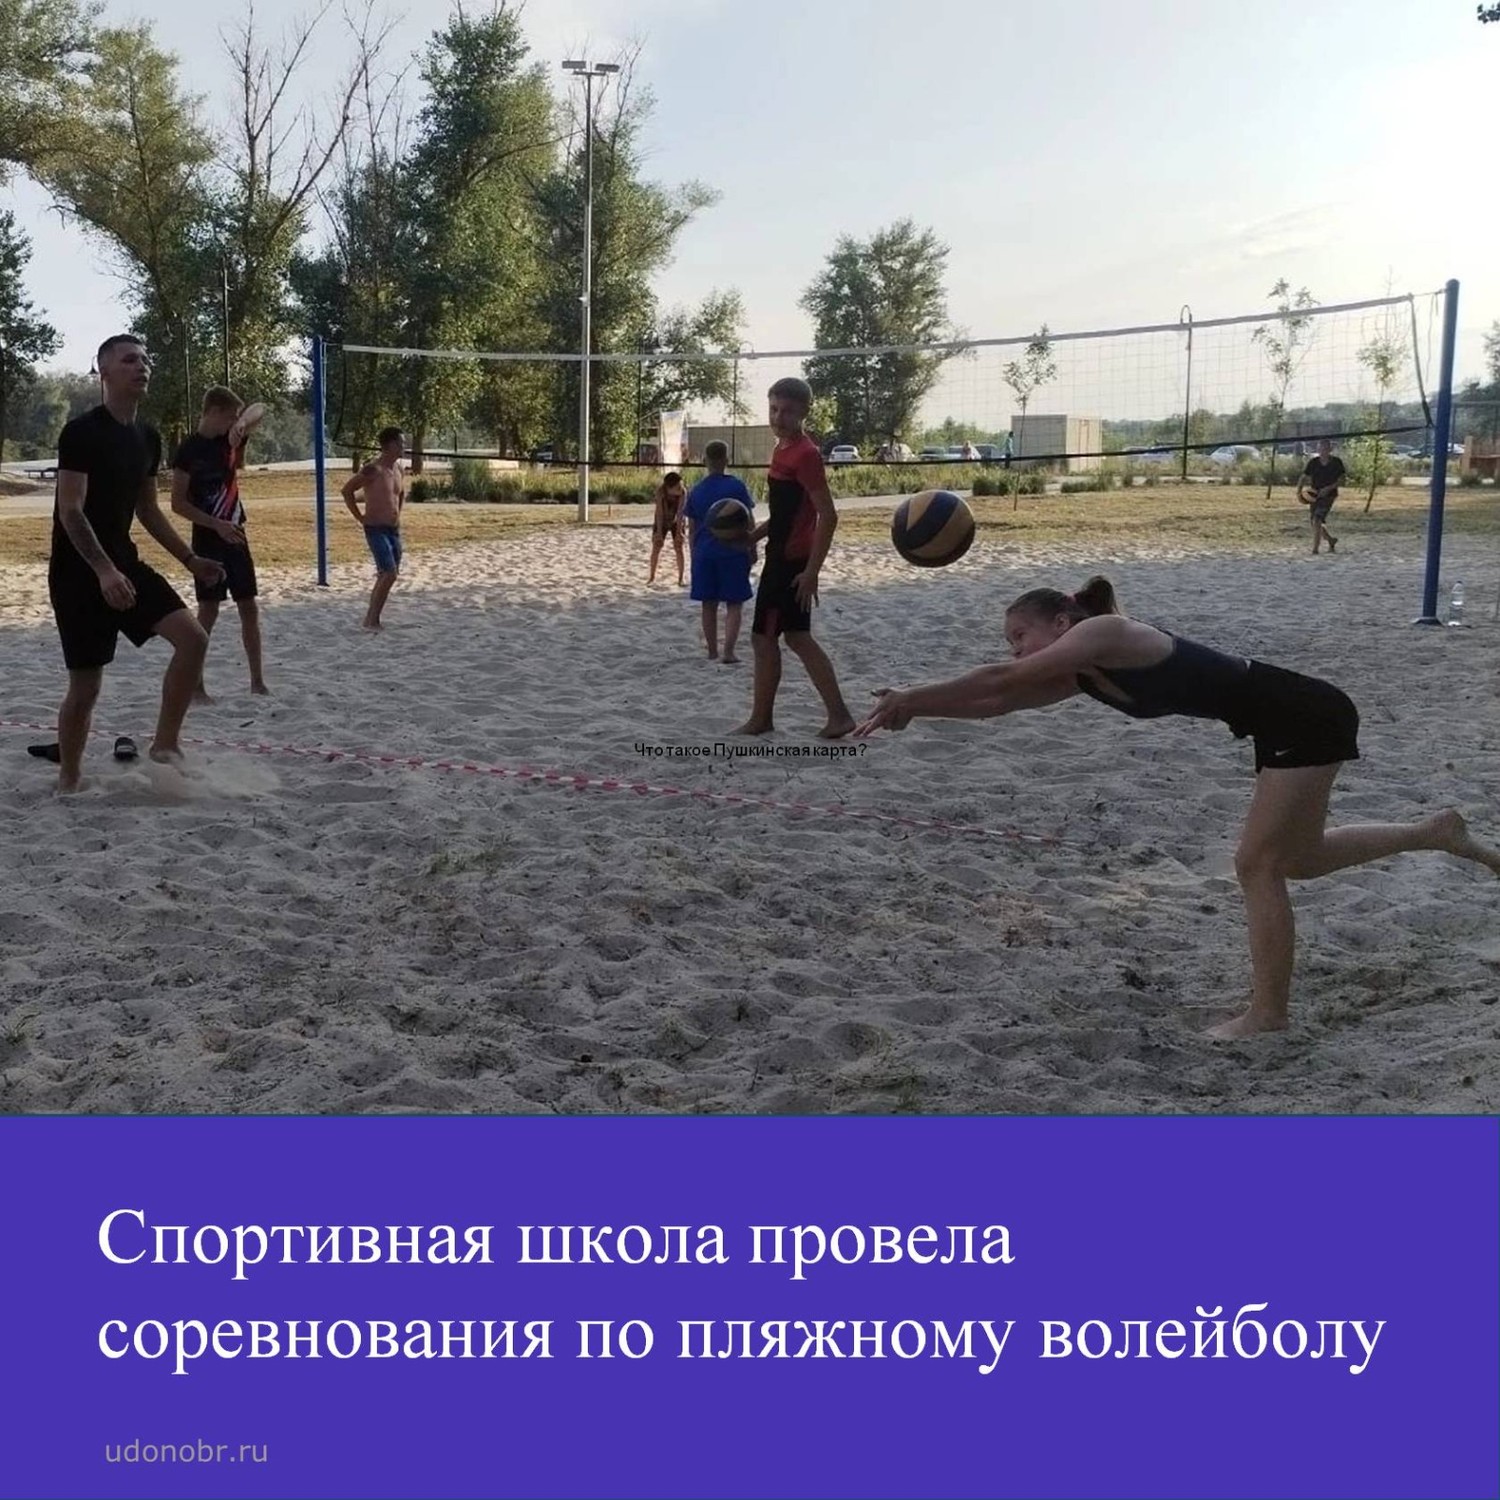 Спортивная школа провела соревнования по пляжному волейболу